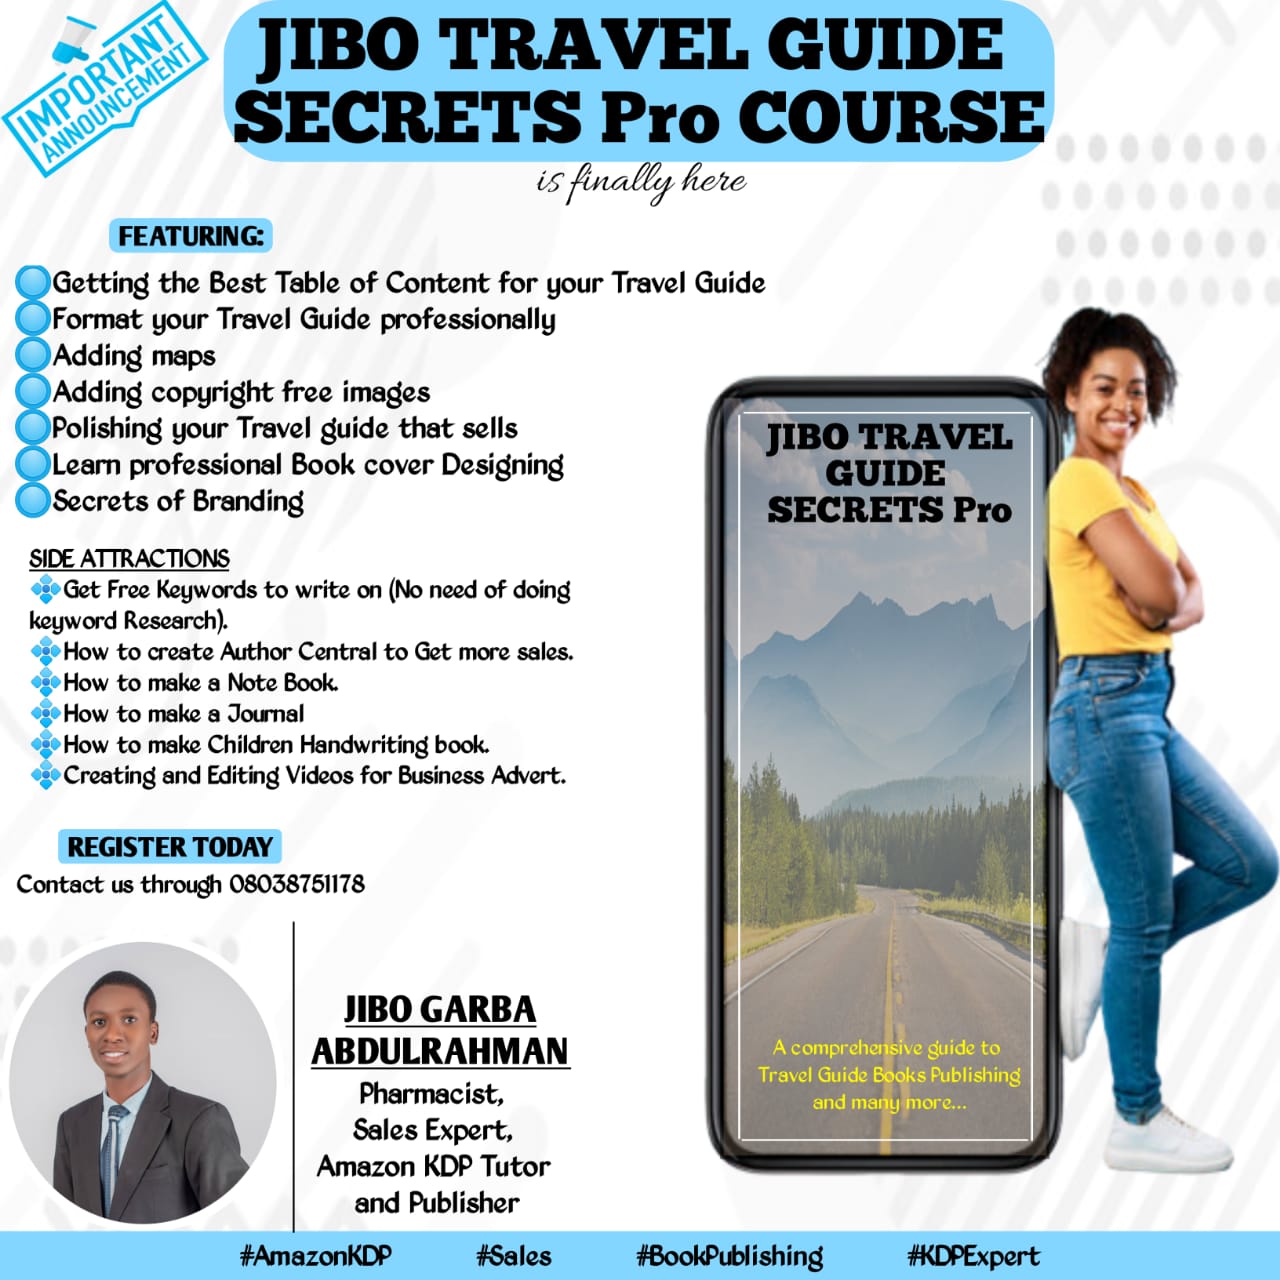 Jibo Travel Guide Secret Pro Course